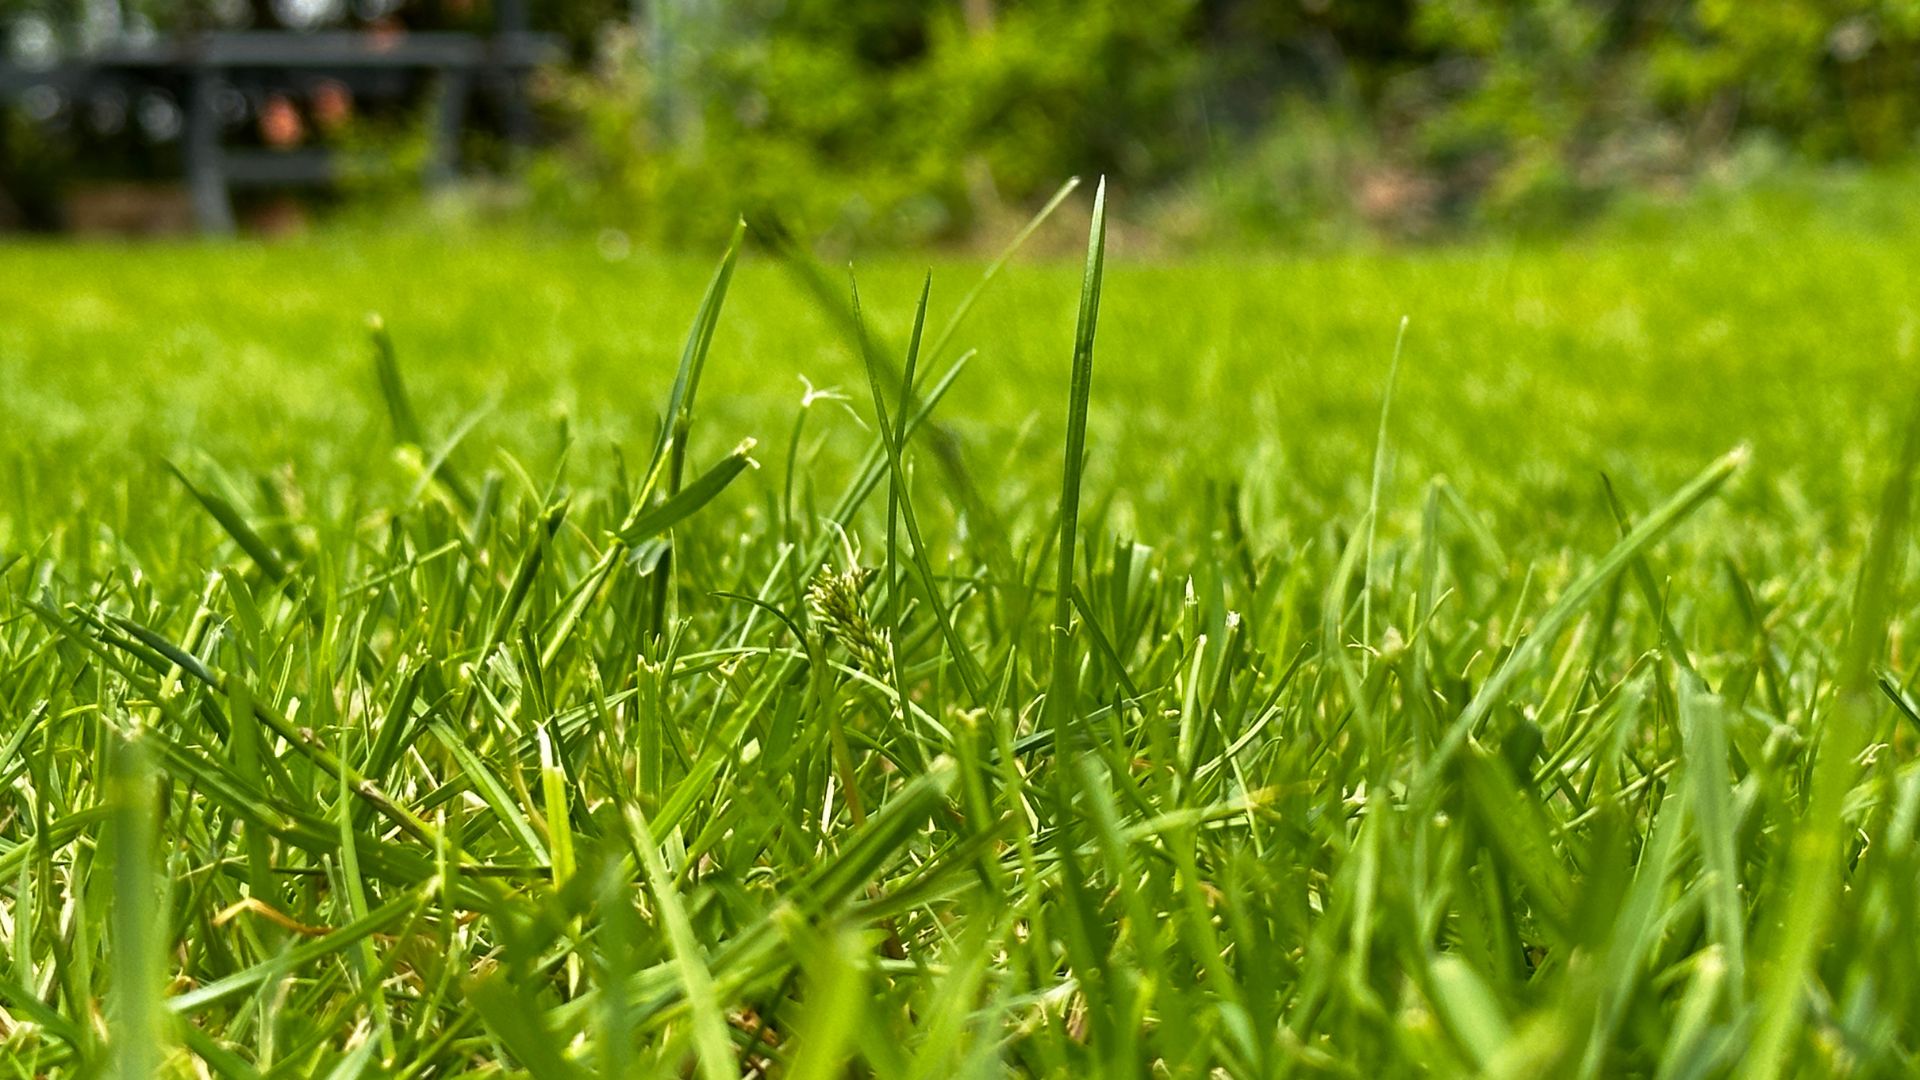 RoboUp grass